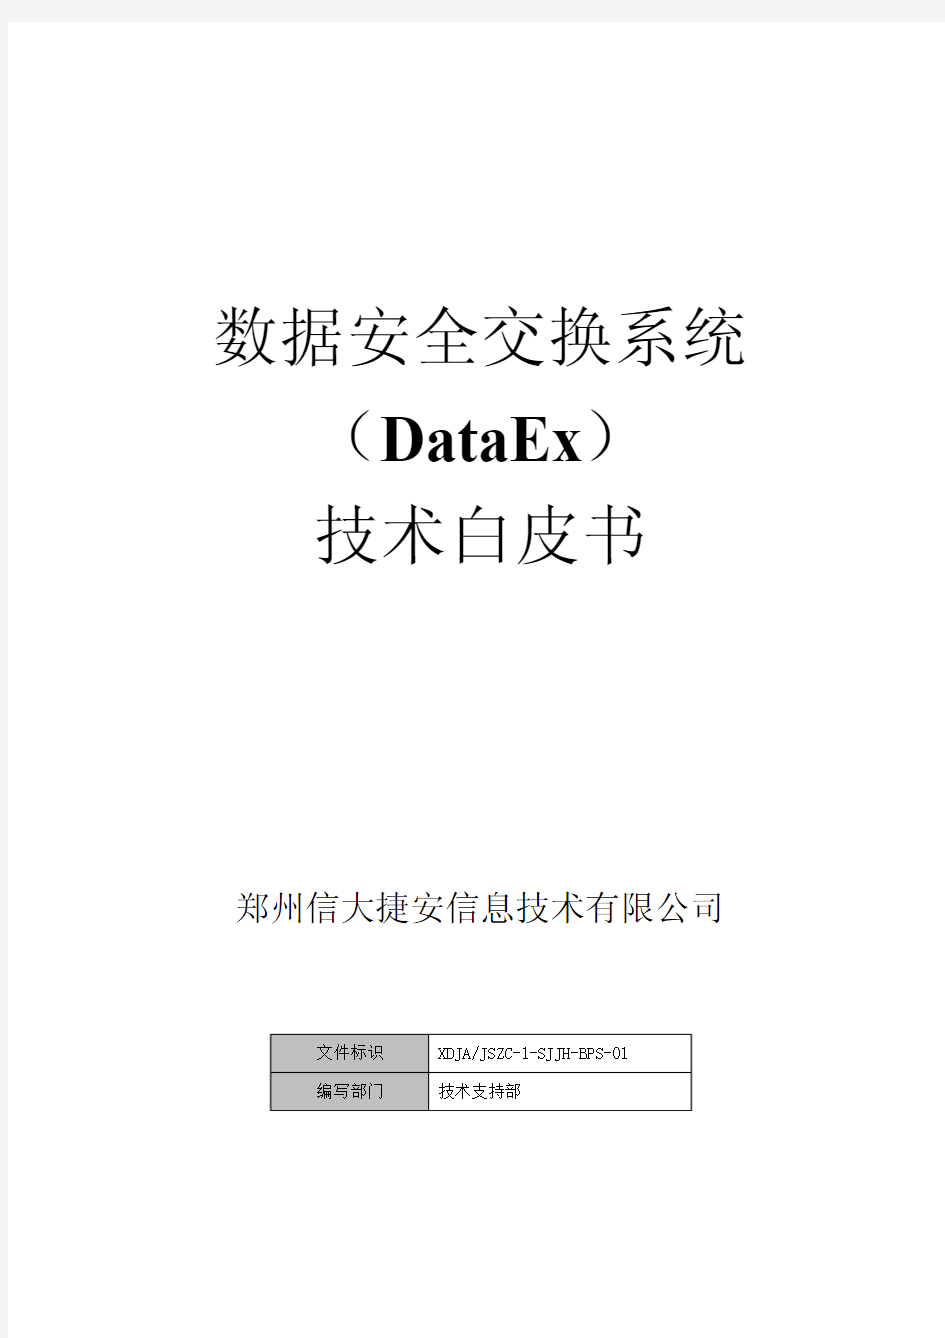 数据安全交换技术白皮书. - 数据安全交换系统(DataEx)